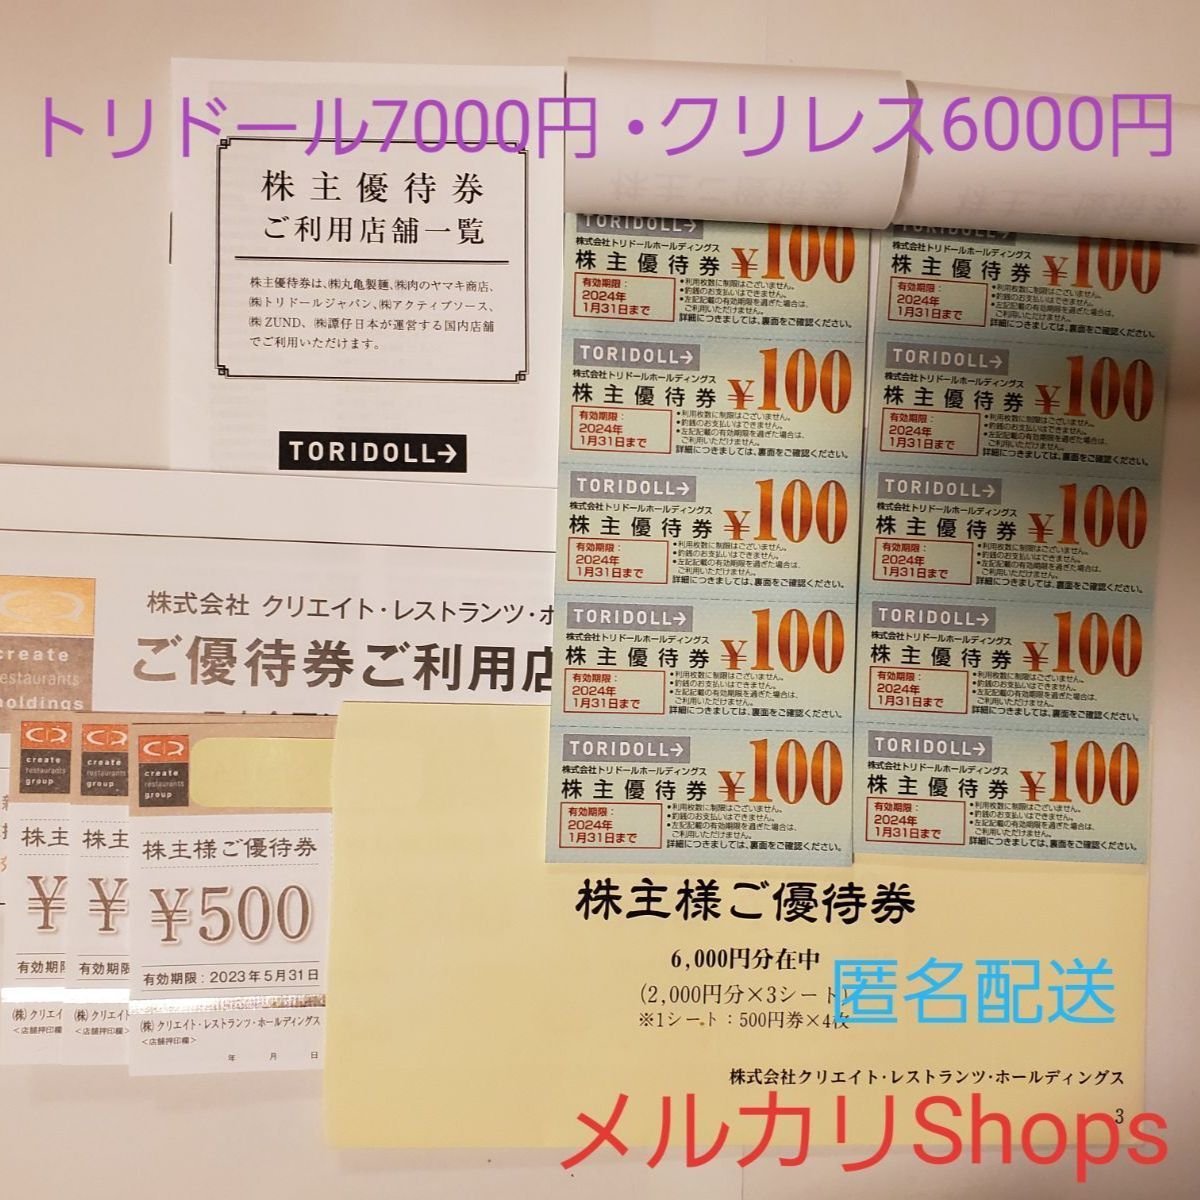 トリドール7000円分、クリレス6000円分、合計13000円分 - 優待Shop